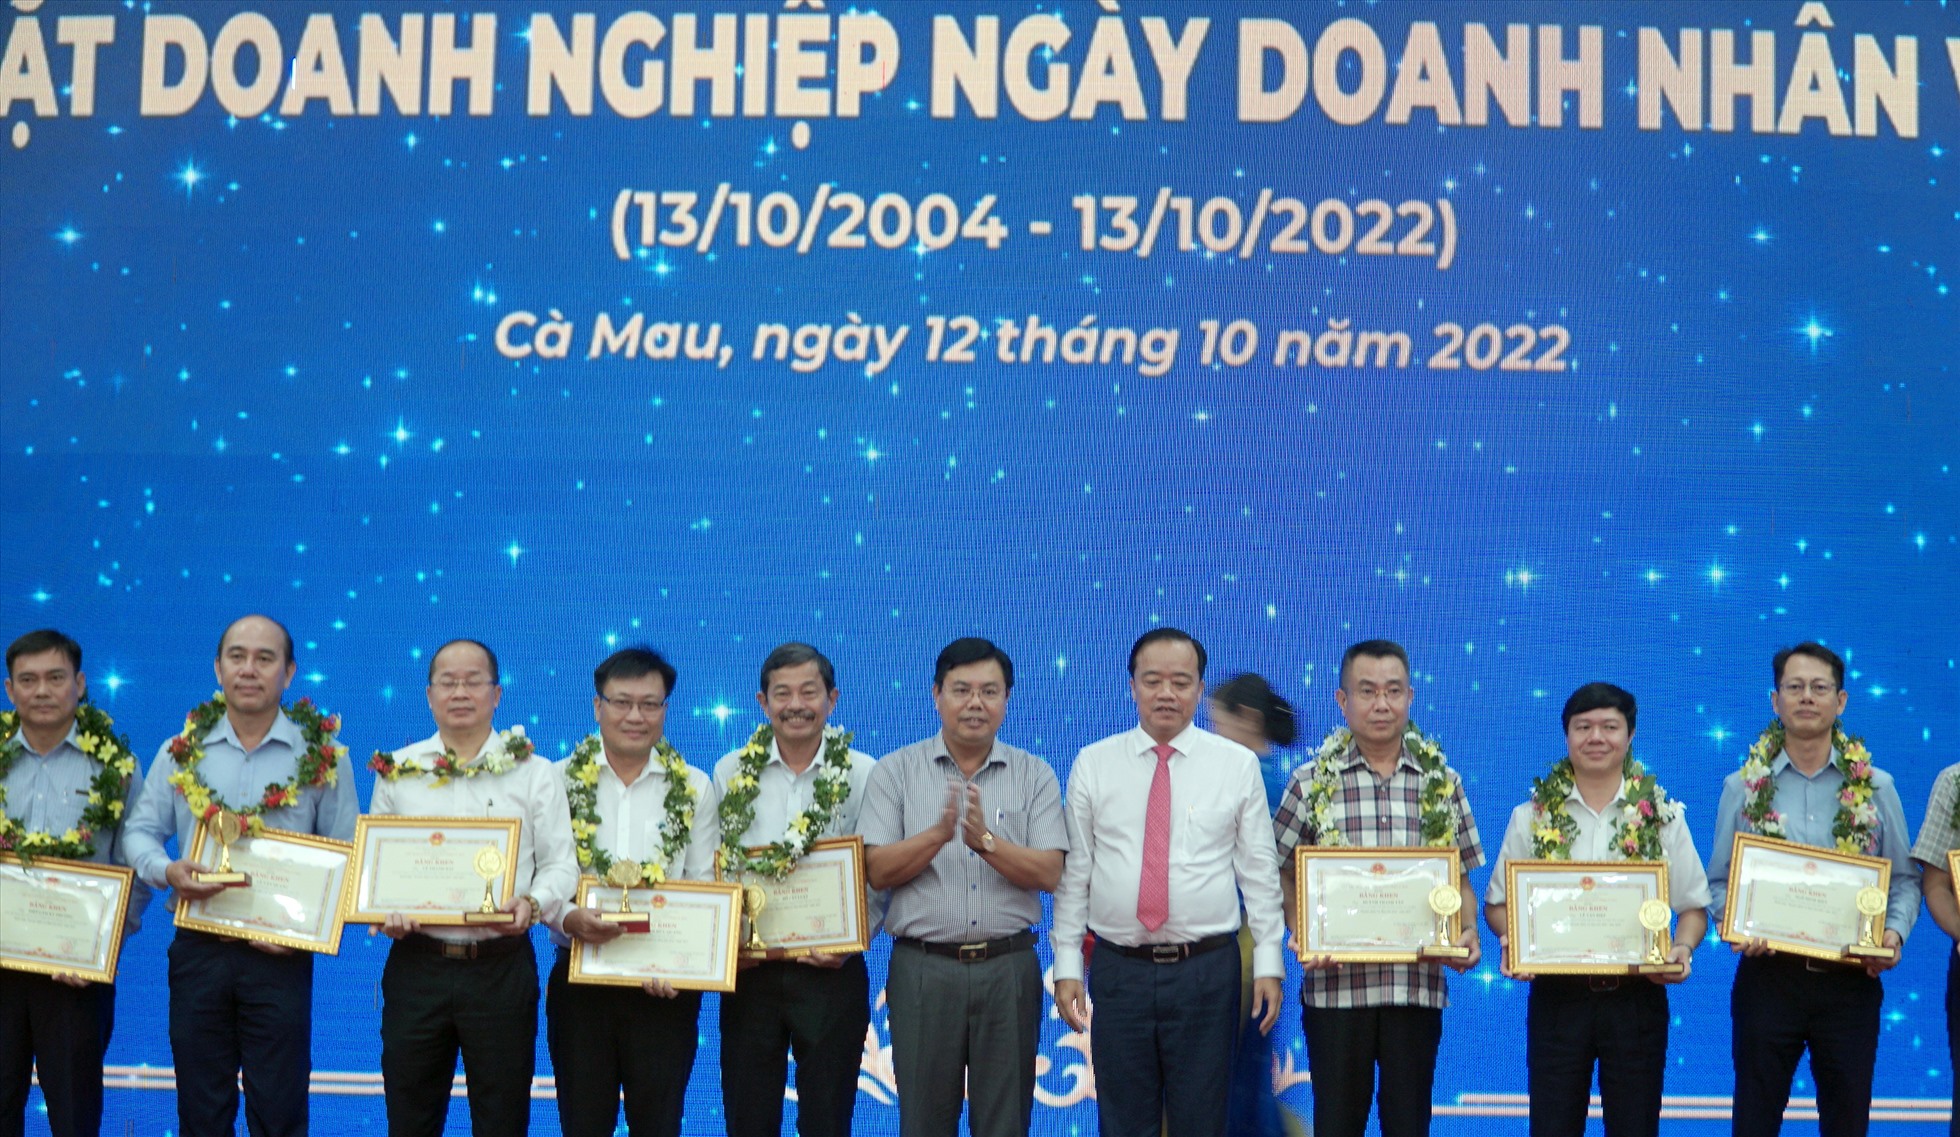 Tại buổi họp mặt 26 doanh nghiệp được Chủ tịch UBND tỉnh Cà Mau tặng bằng khen. Ảnh: Nhật Hồ